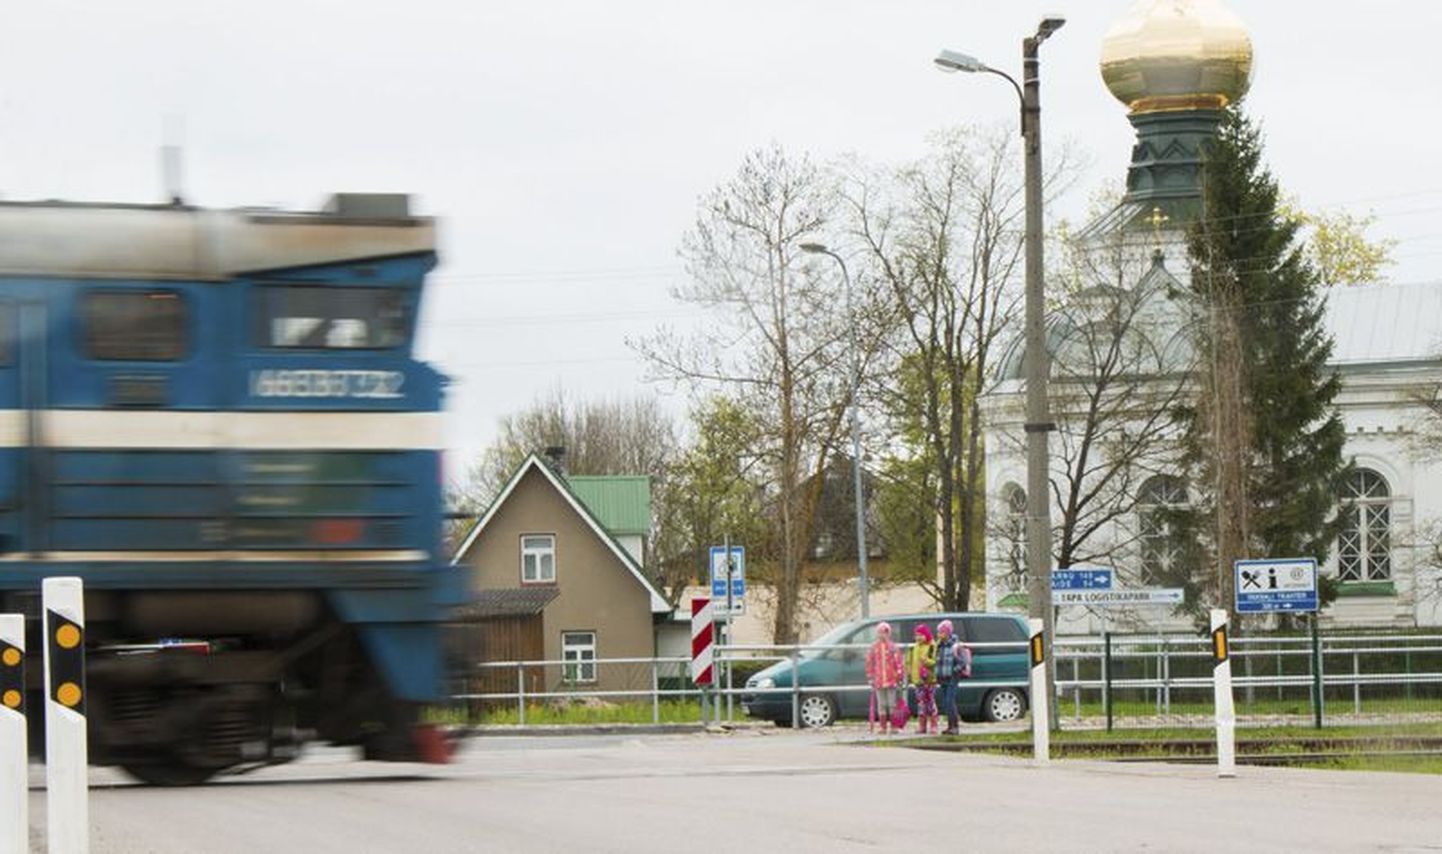 Tapalt liiguvad rongid nii Tartu, Narva kui Tallinna suunal. Võimalus kasutada mugavat ja kiiret ühistransporti on üheks põhjuseks, miks see linn uueks elukohaks valitakse.